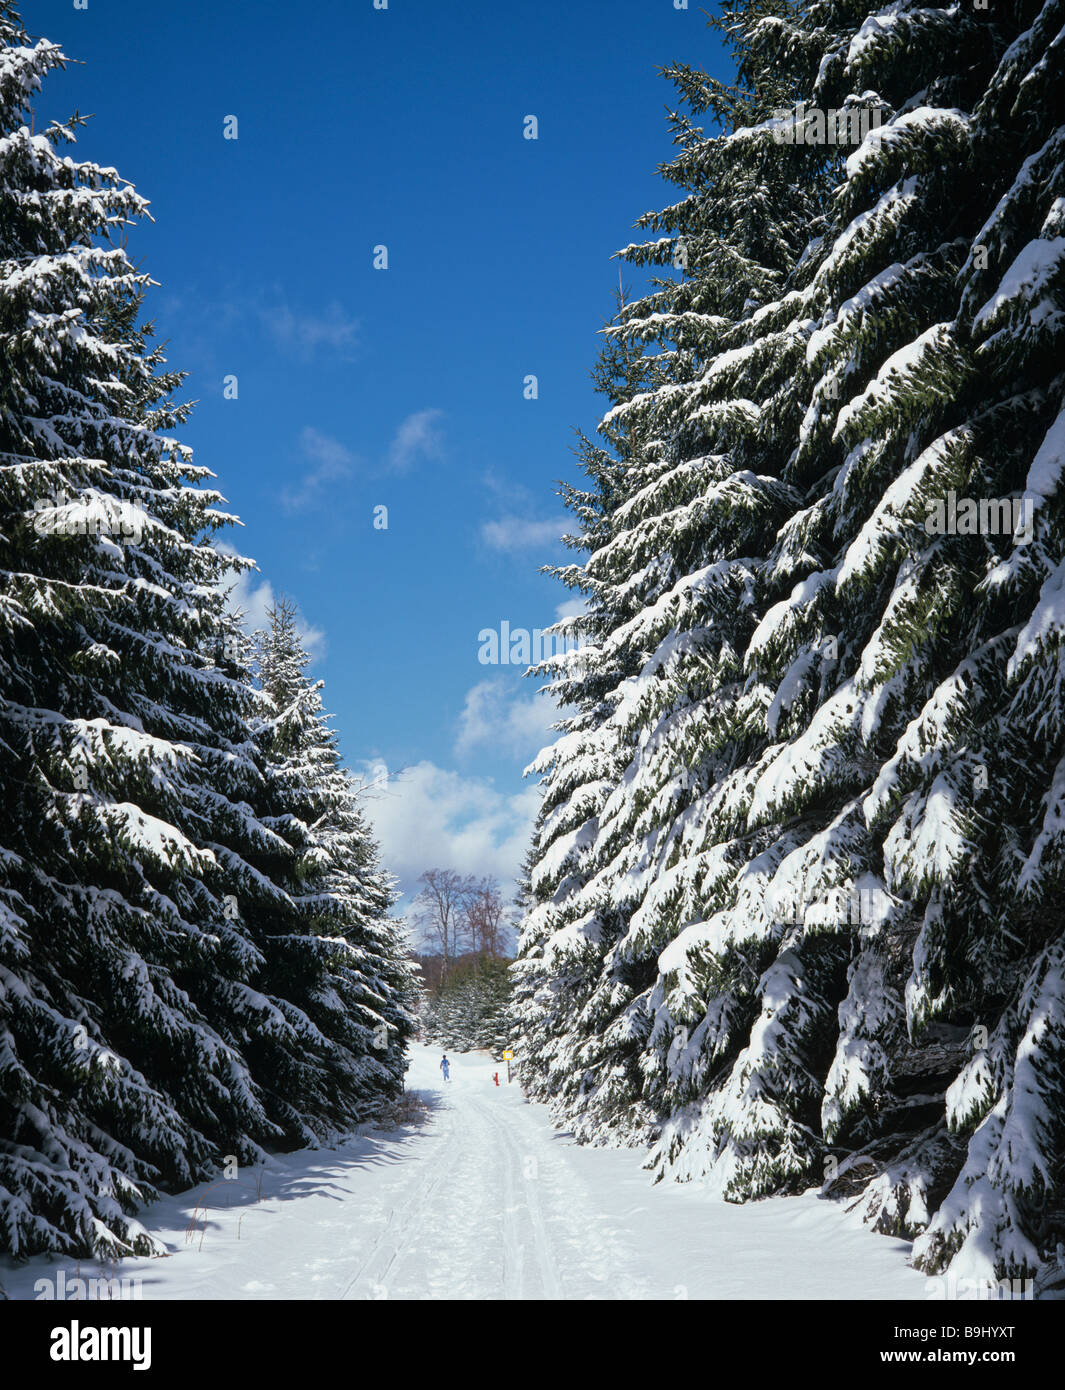 Arbres, forêt de sapins couverts de neige, hiver, paysage, neige fraîche, sentiers de cross-country Banque D'Images